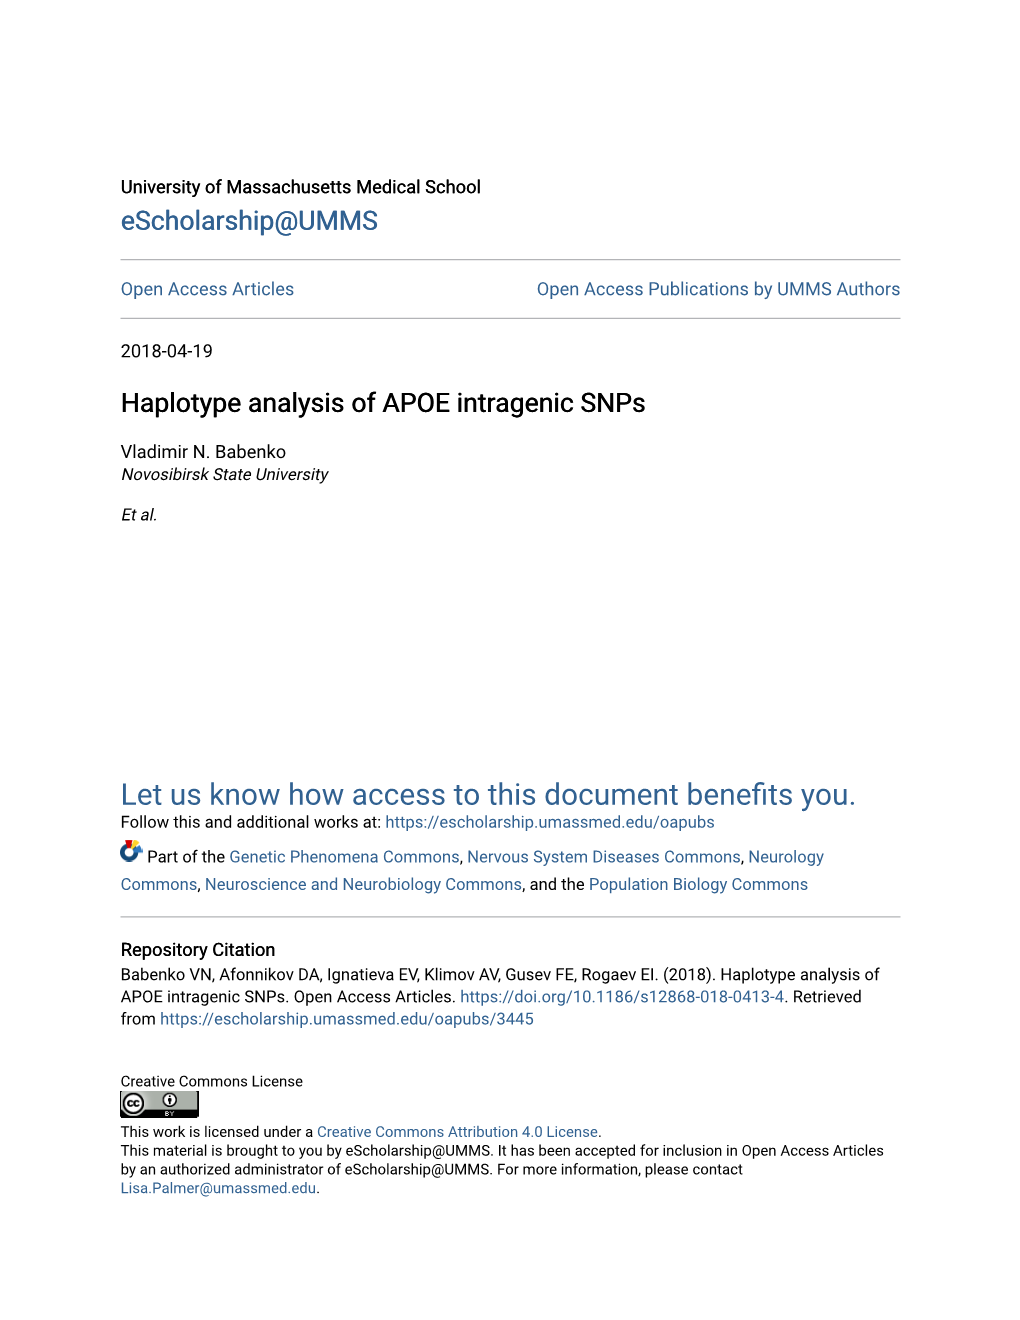 Haplotype Analysis of APOE Intragenic Snps